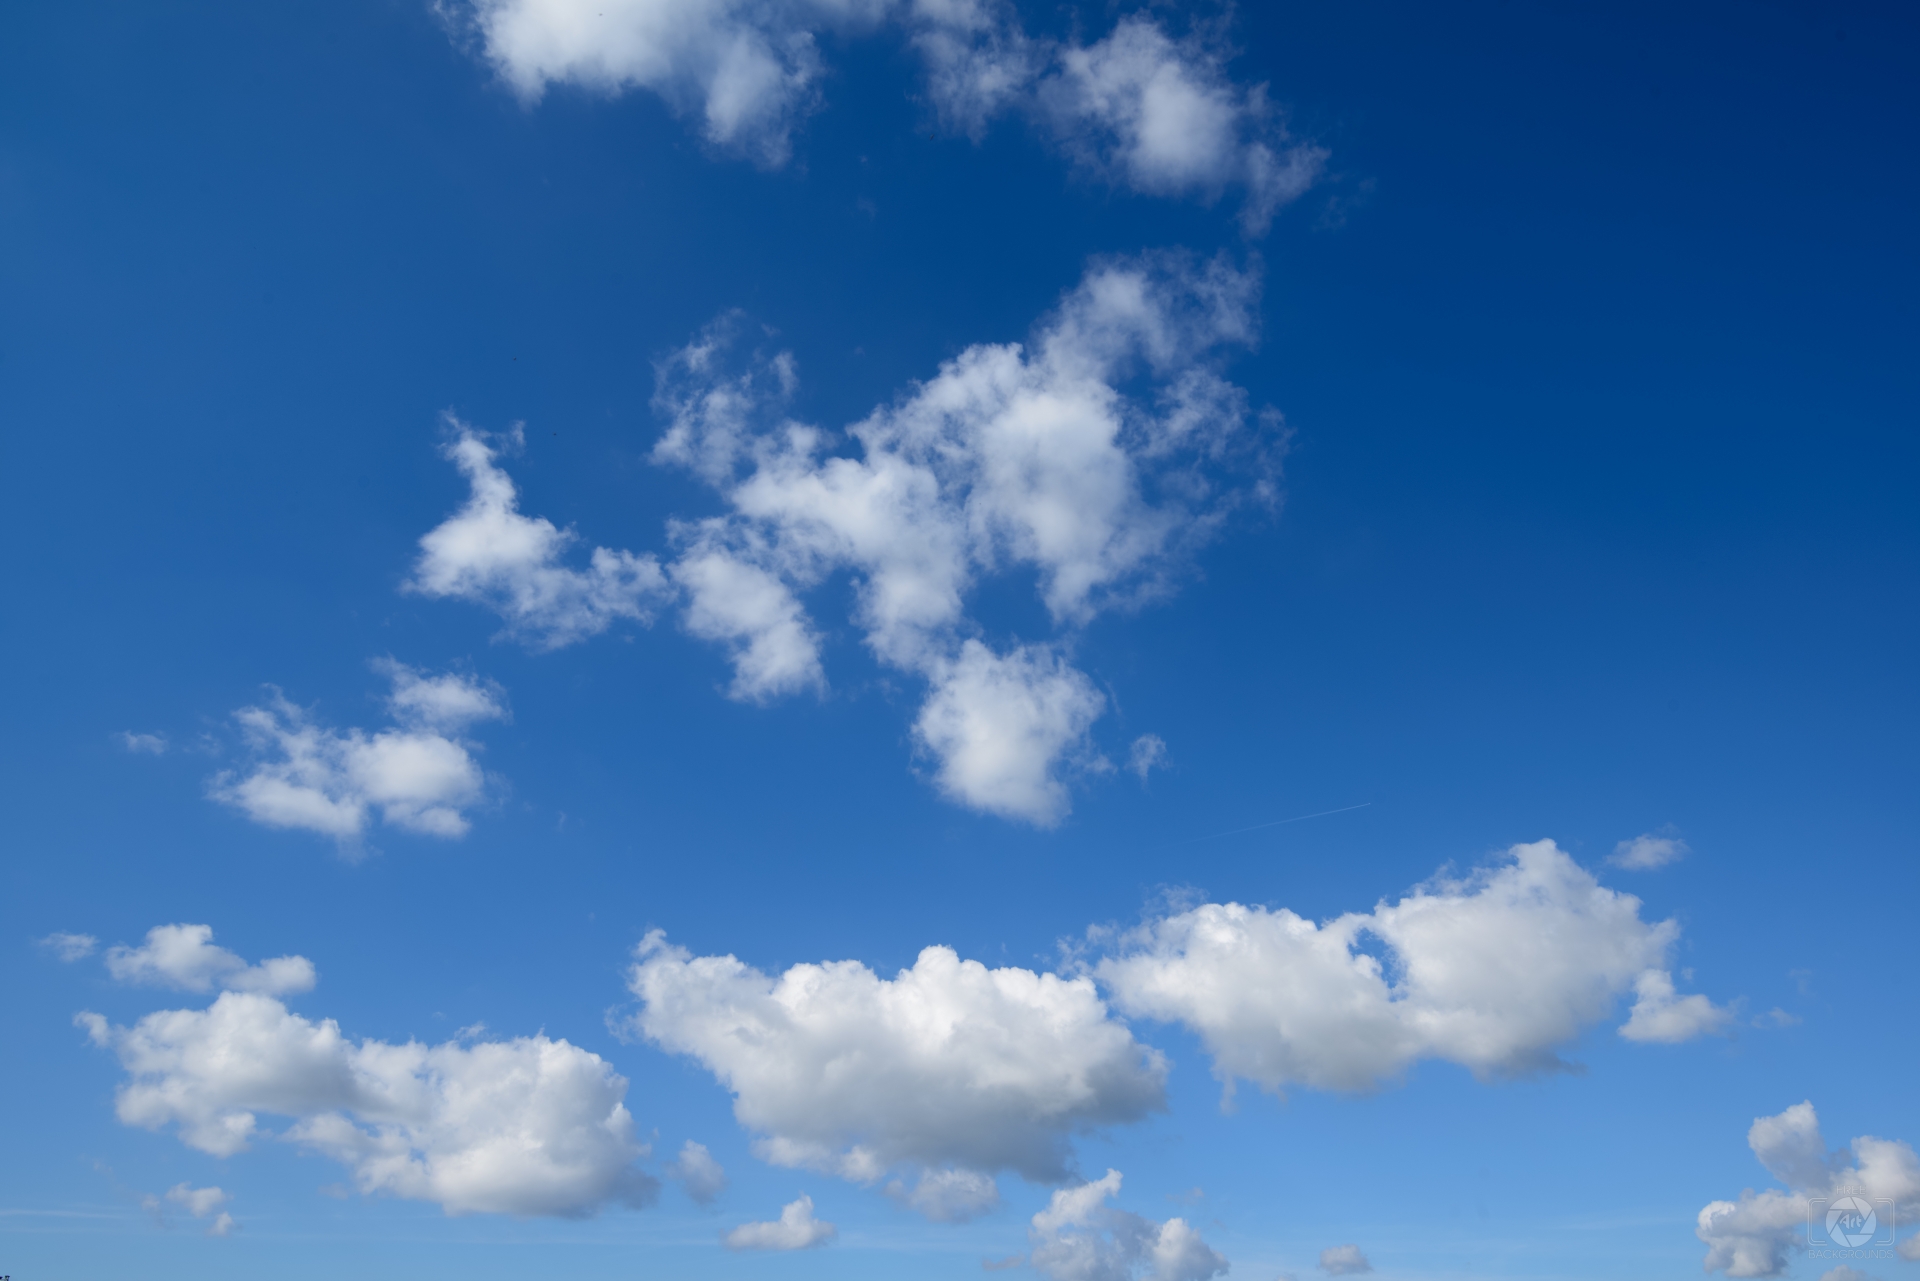 Nền sky xanh với đám mây đẹp - Hình nền miễn phí chất lượng cao - Hình nền miễn phí cực đẹp với nền sky xanh thật tuyệt vời. Cùng chiêm ngưỡng những đám mây trắng xóa phủ kín nền trời với tốc độ chóng mặt. Tận hưởng không gian trong lành và tràn đầy sức sống bên đội ngũ đám mây này nhé.